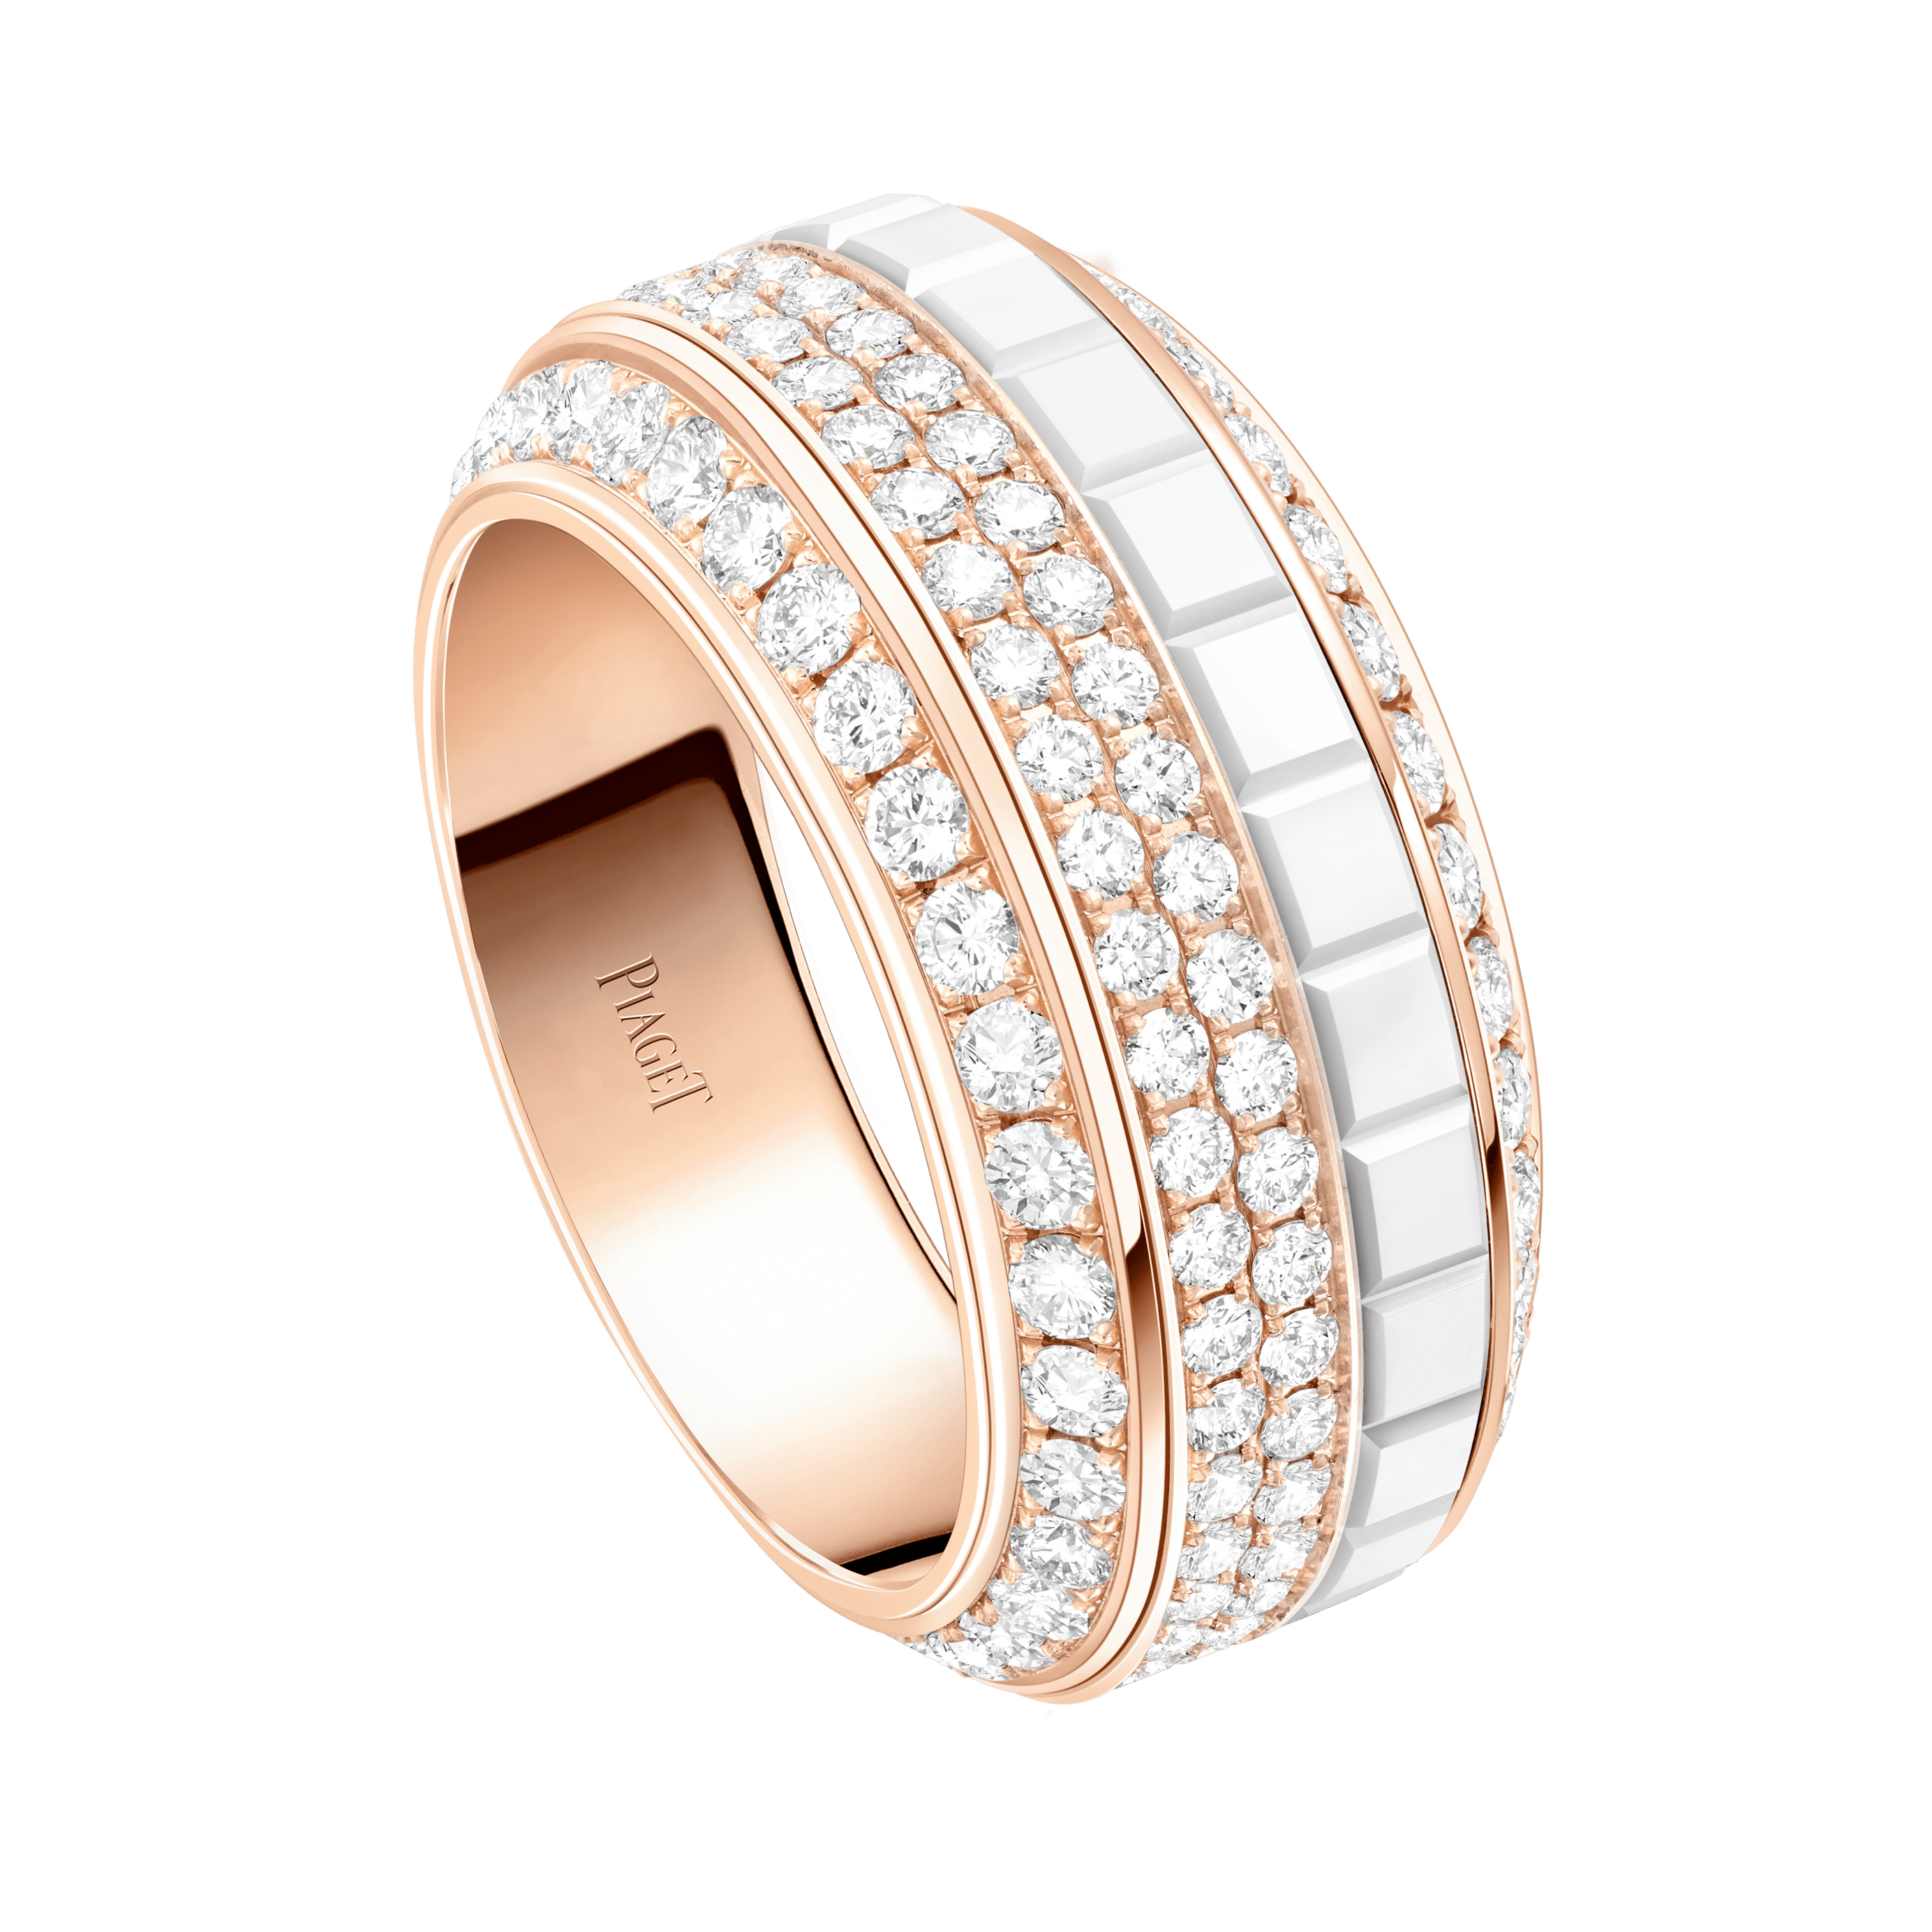 Piaget Rose Gold Ceramic Diamond Ring G34P1H00